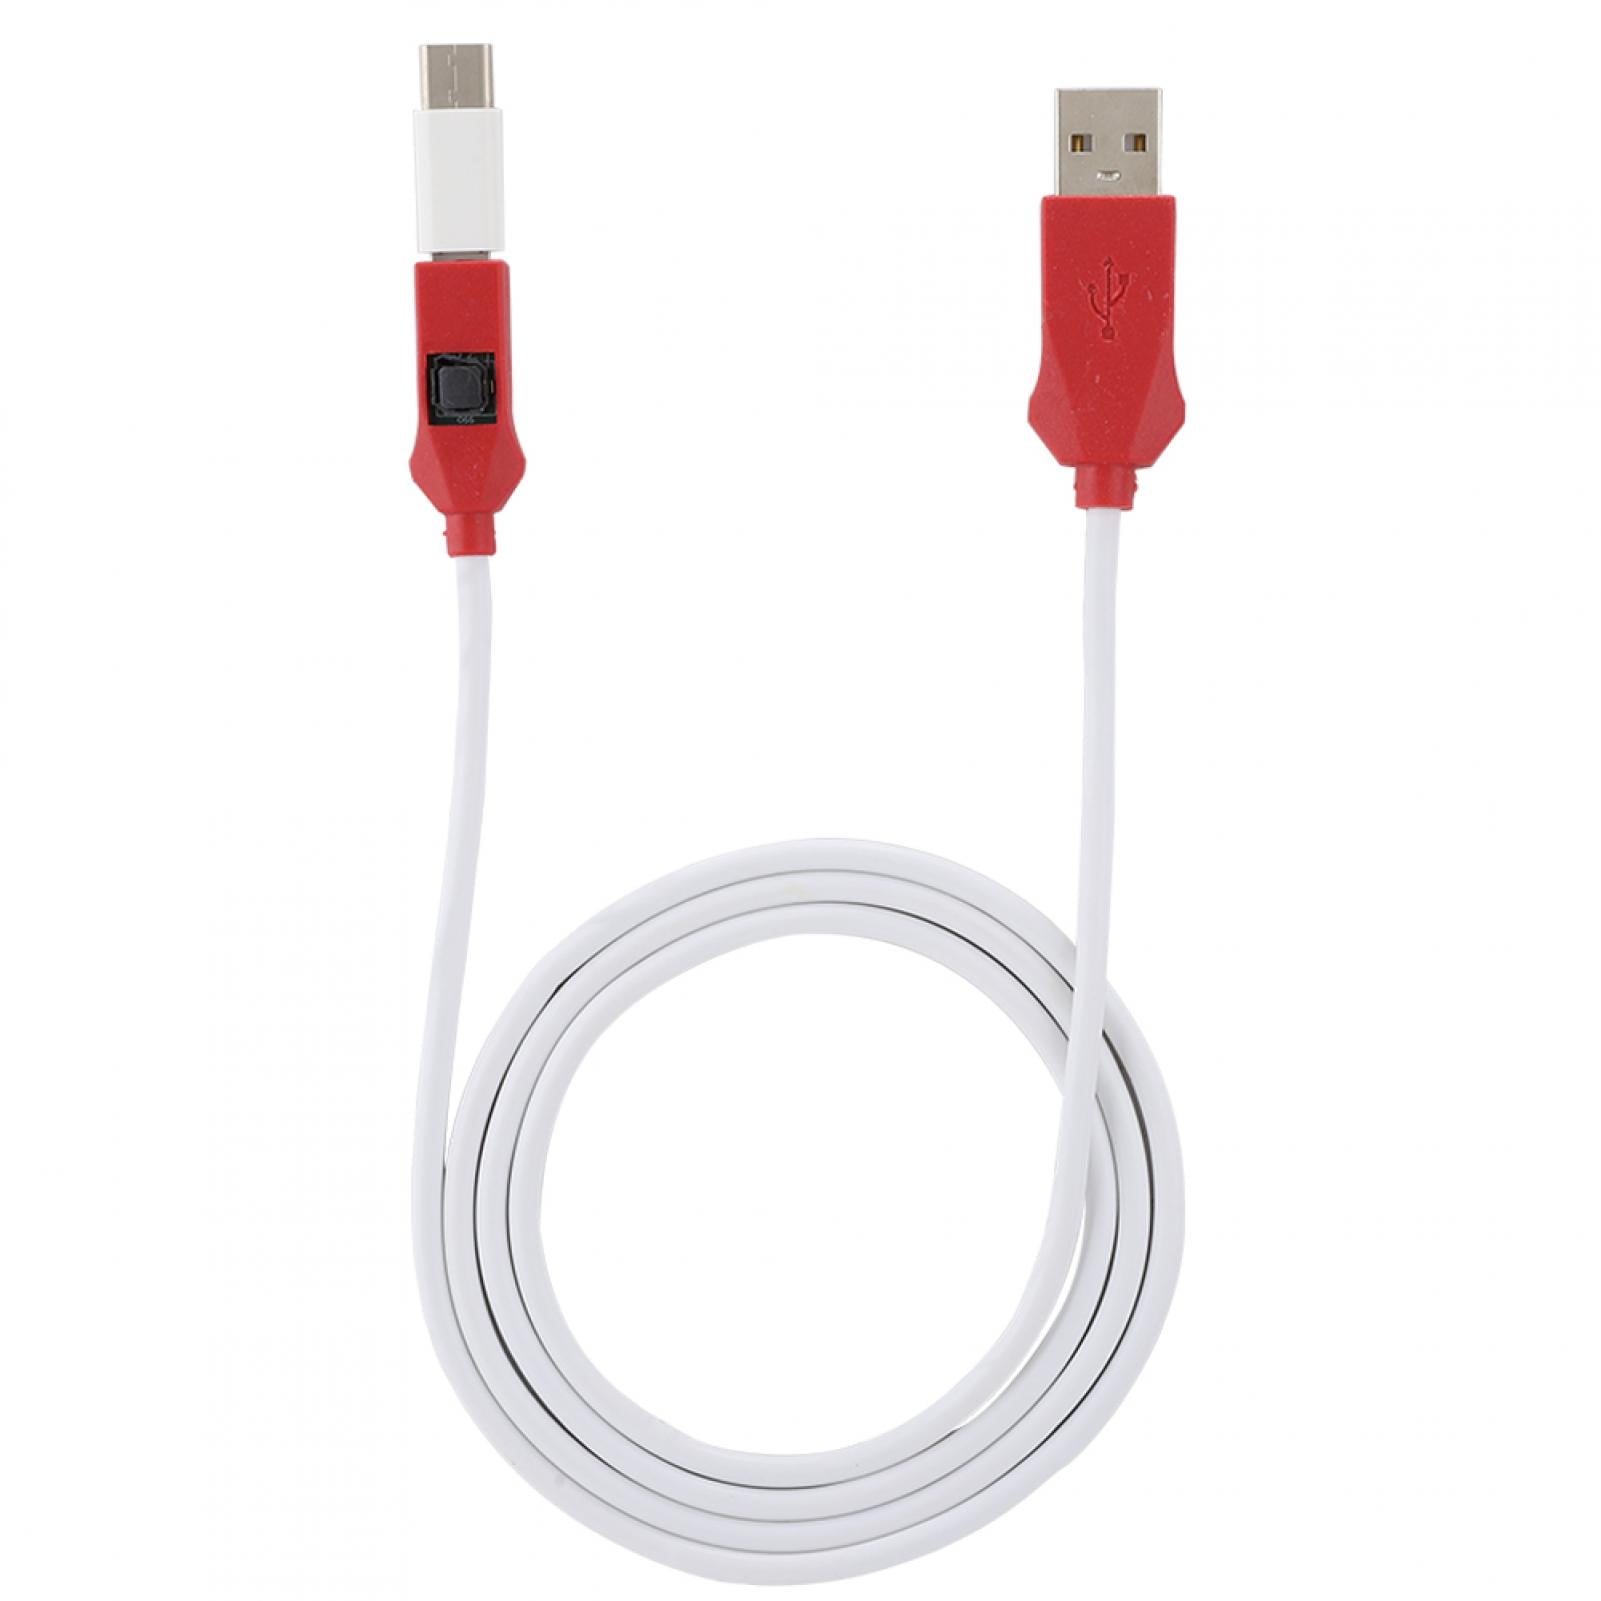 Flash кабель. EDL кабель. Сервисный кабель. USB Kabel EDL. Сервисный шнур Hiltl.